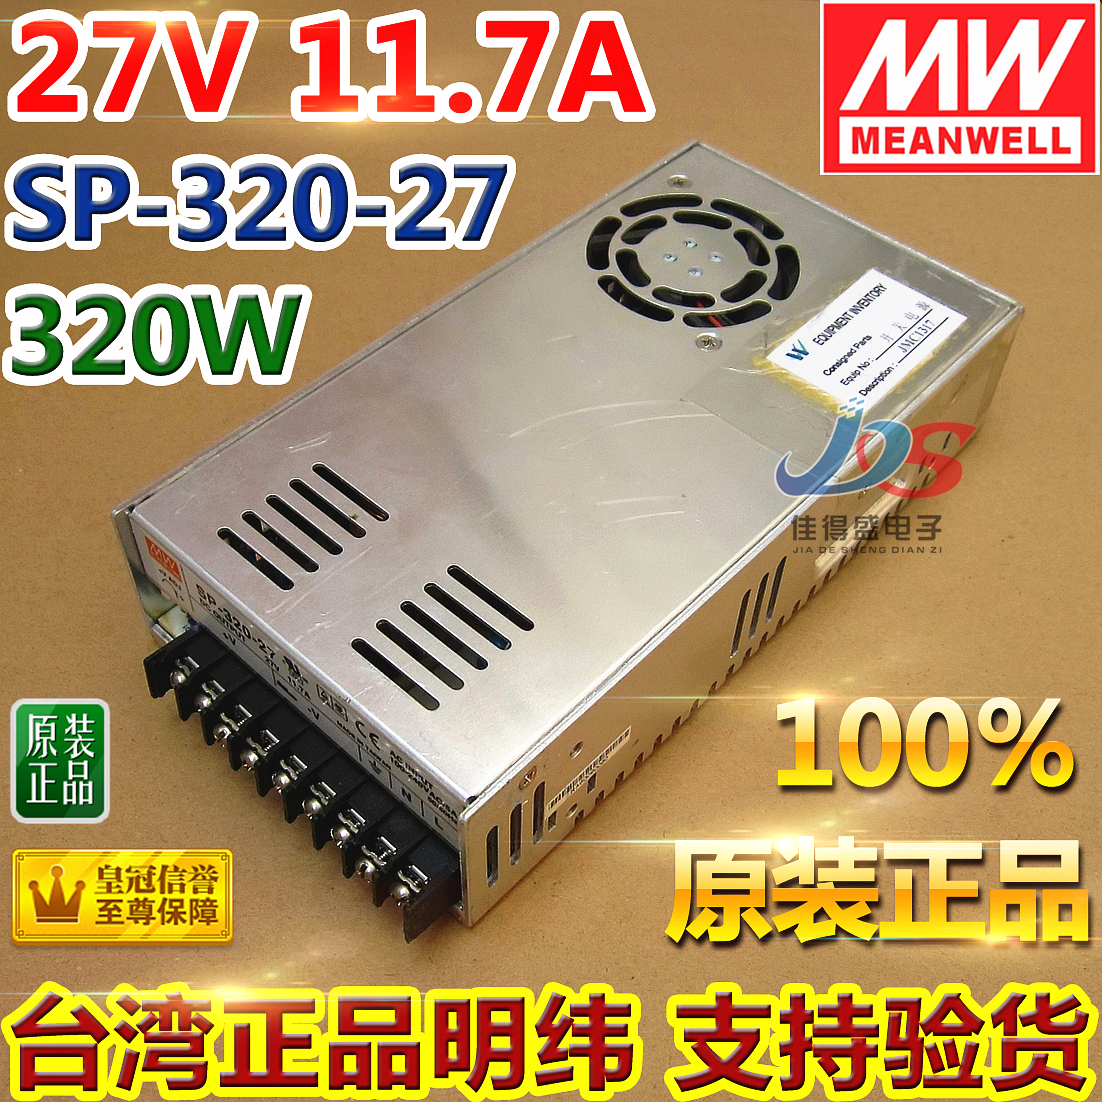 台湾明纬开关电源27V 11.7A  SP-320-27 320W  电梯配件电源盒